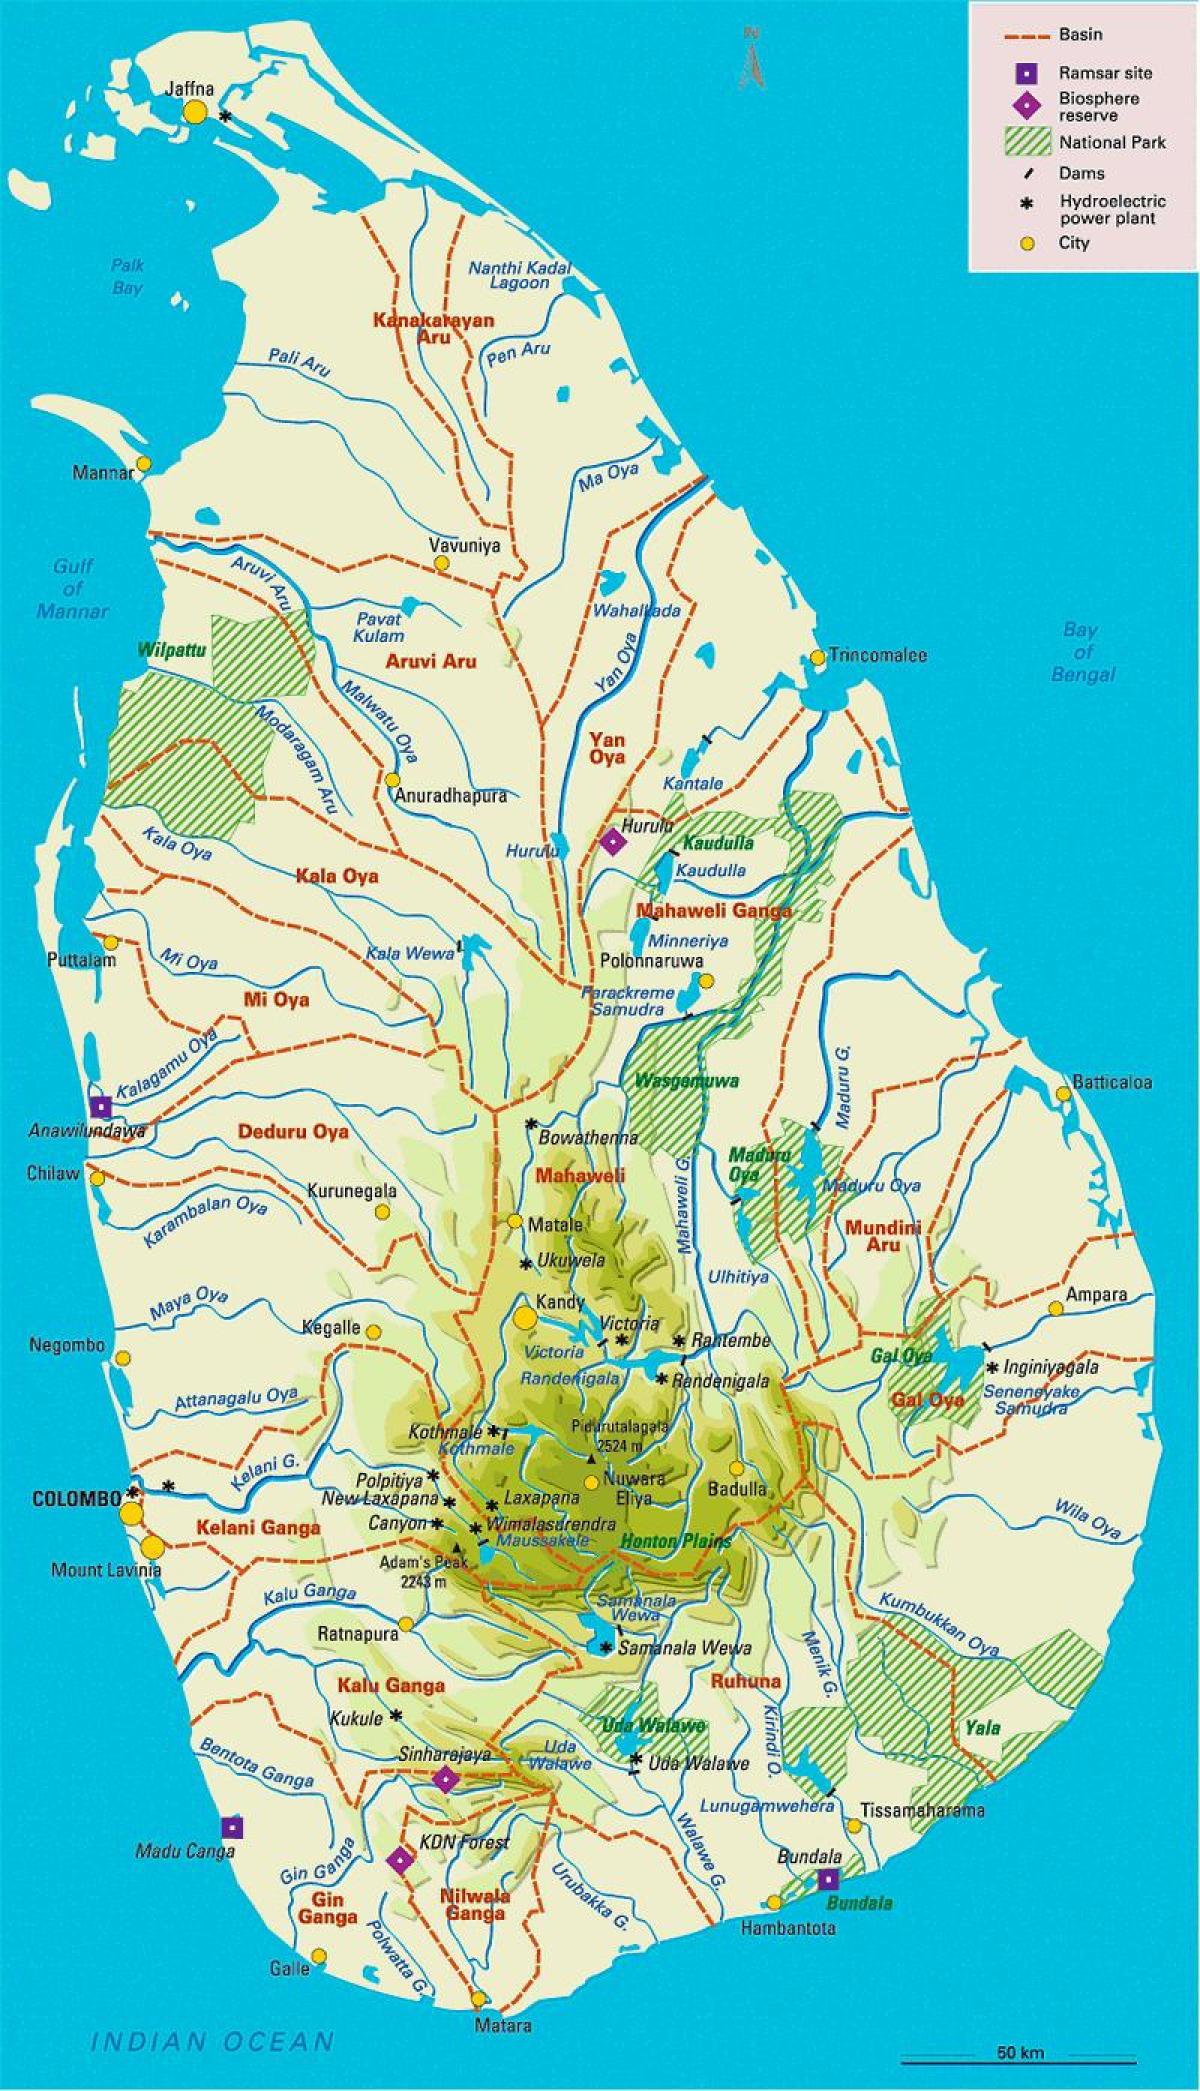 Sri Lanka River Map Sinhala Sri Lankan Rivers Map In Tamil Southern Asia Asia